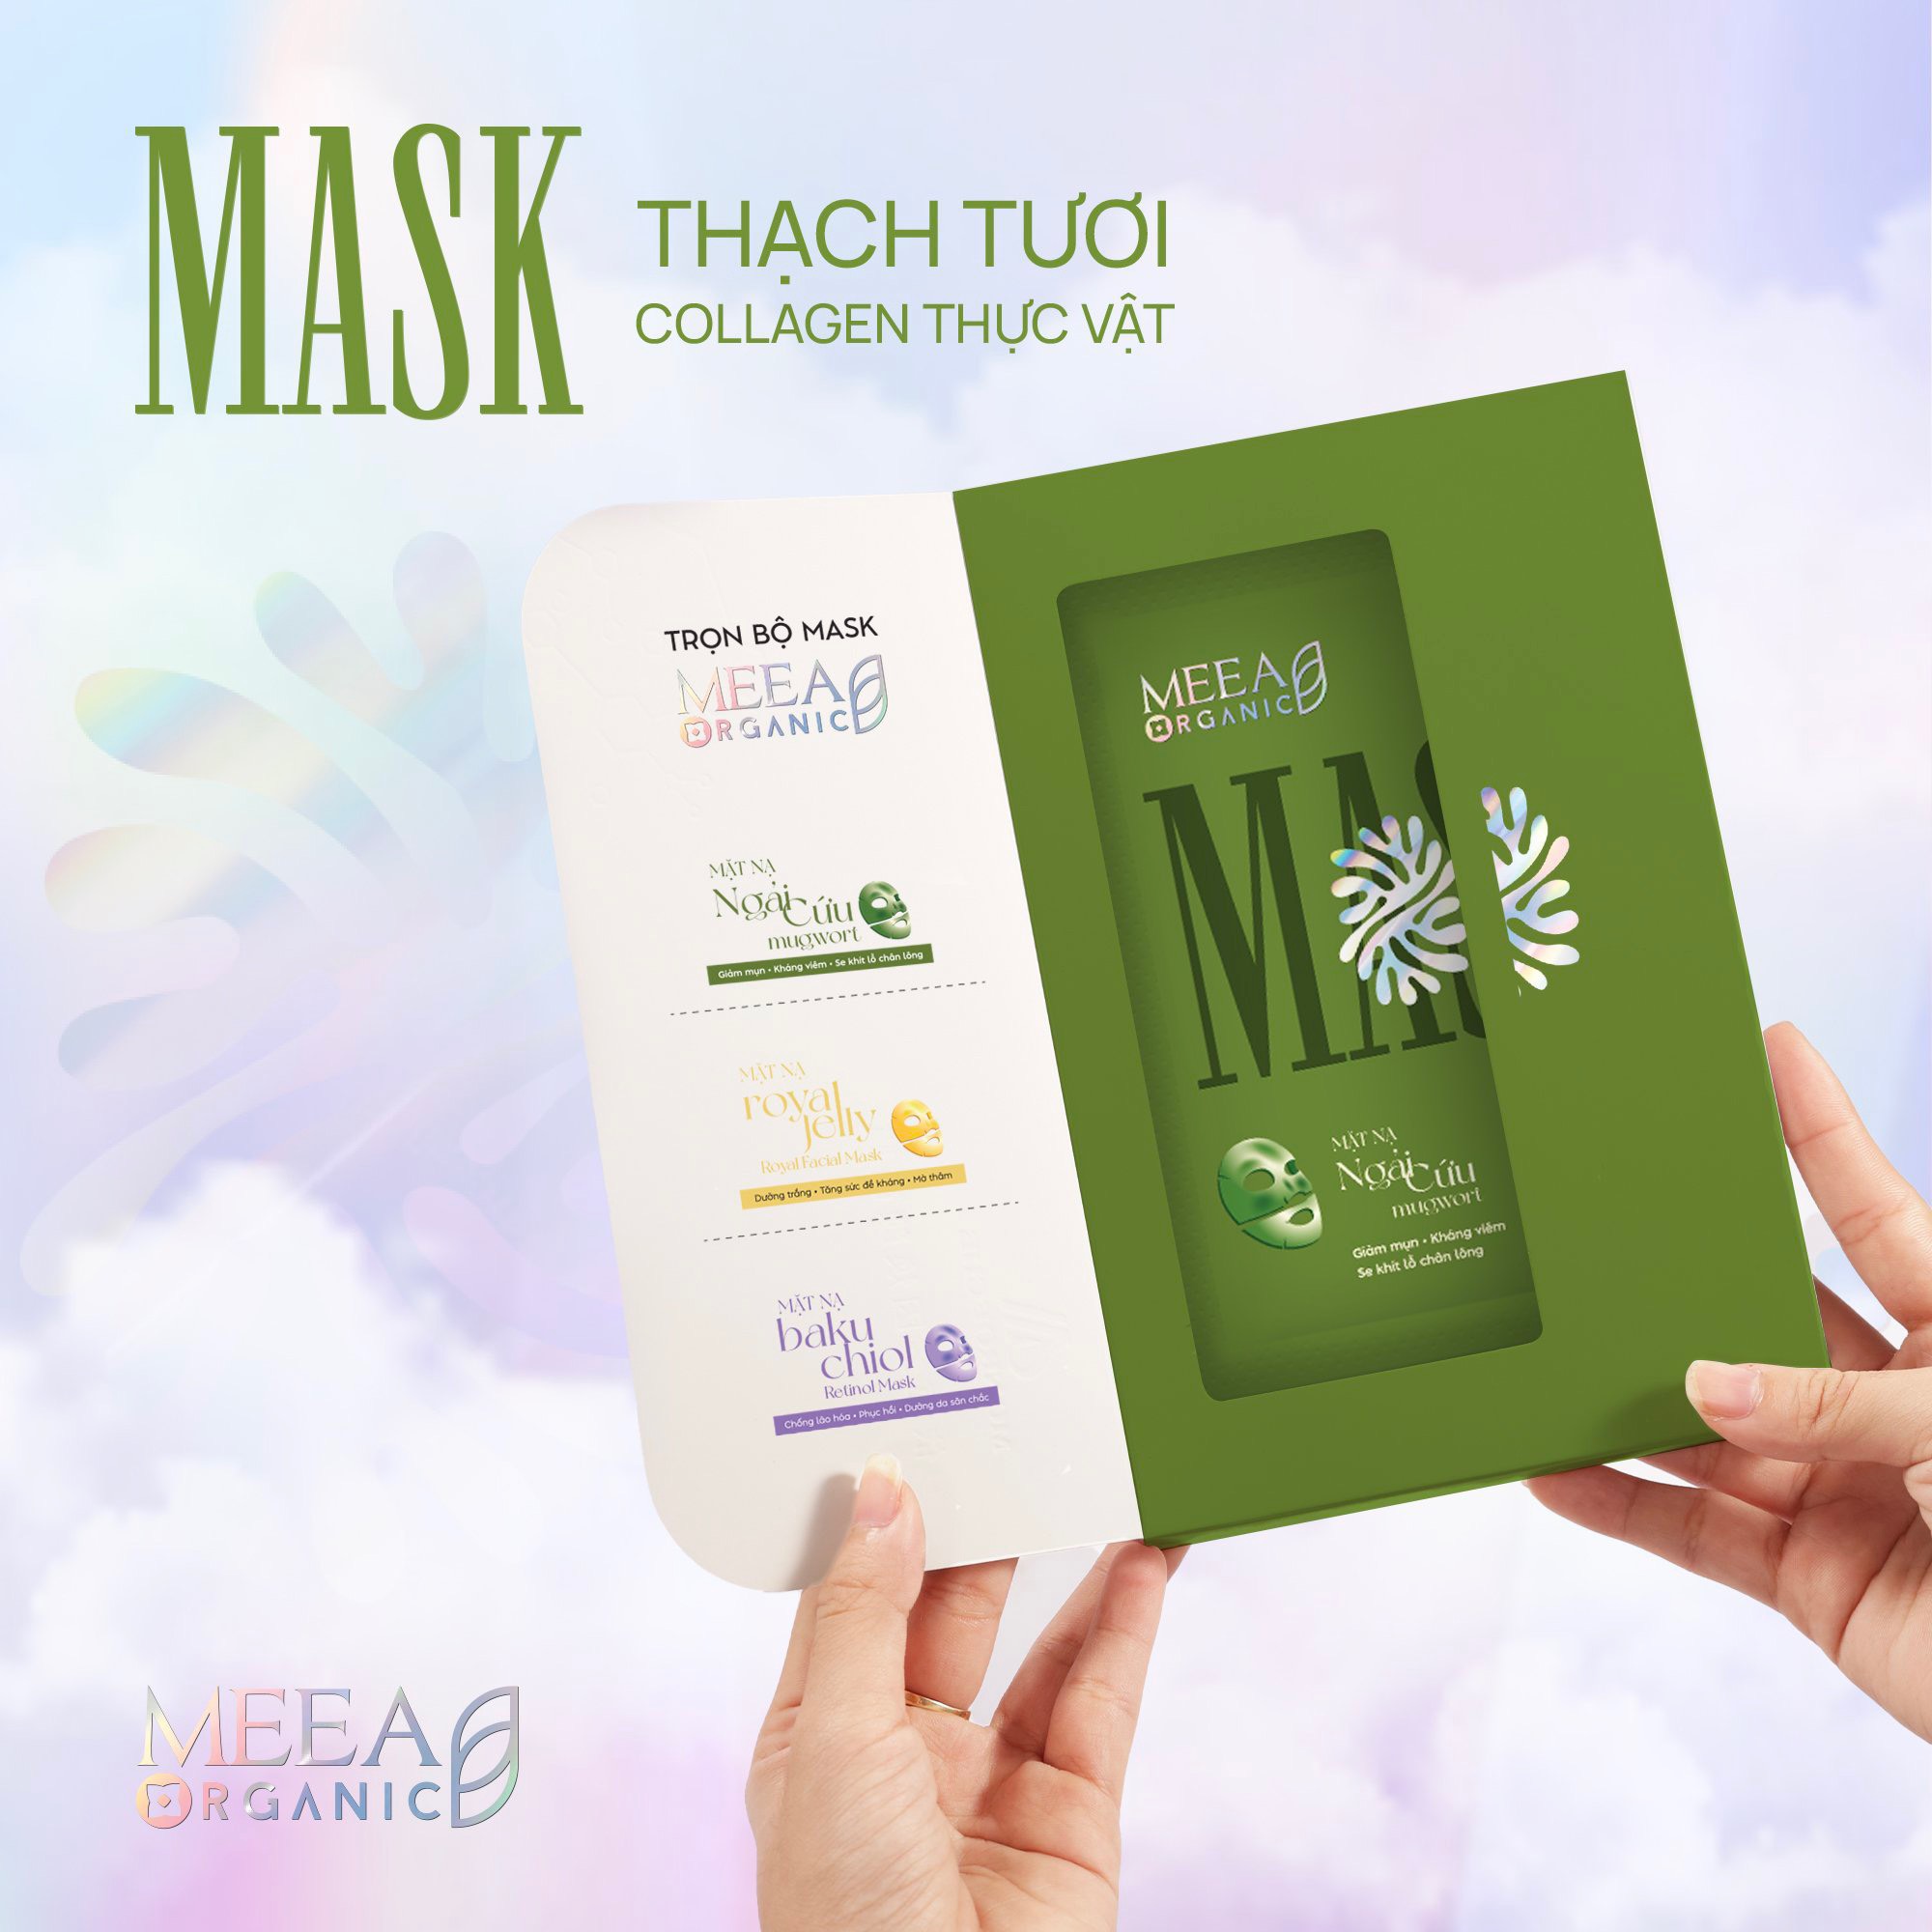 Mask Thạch Tươi Collagen Ngãi Cứu Mugwort Mask Meea Organic Chính Hãng